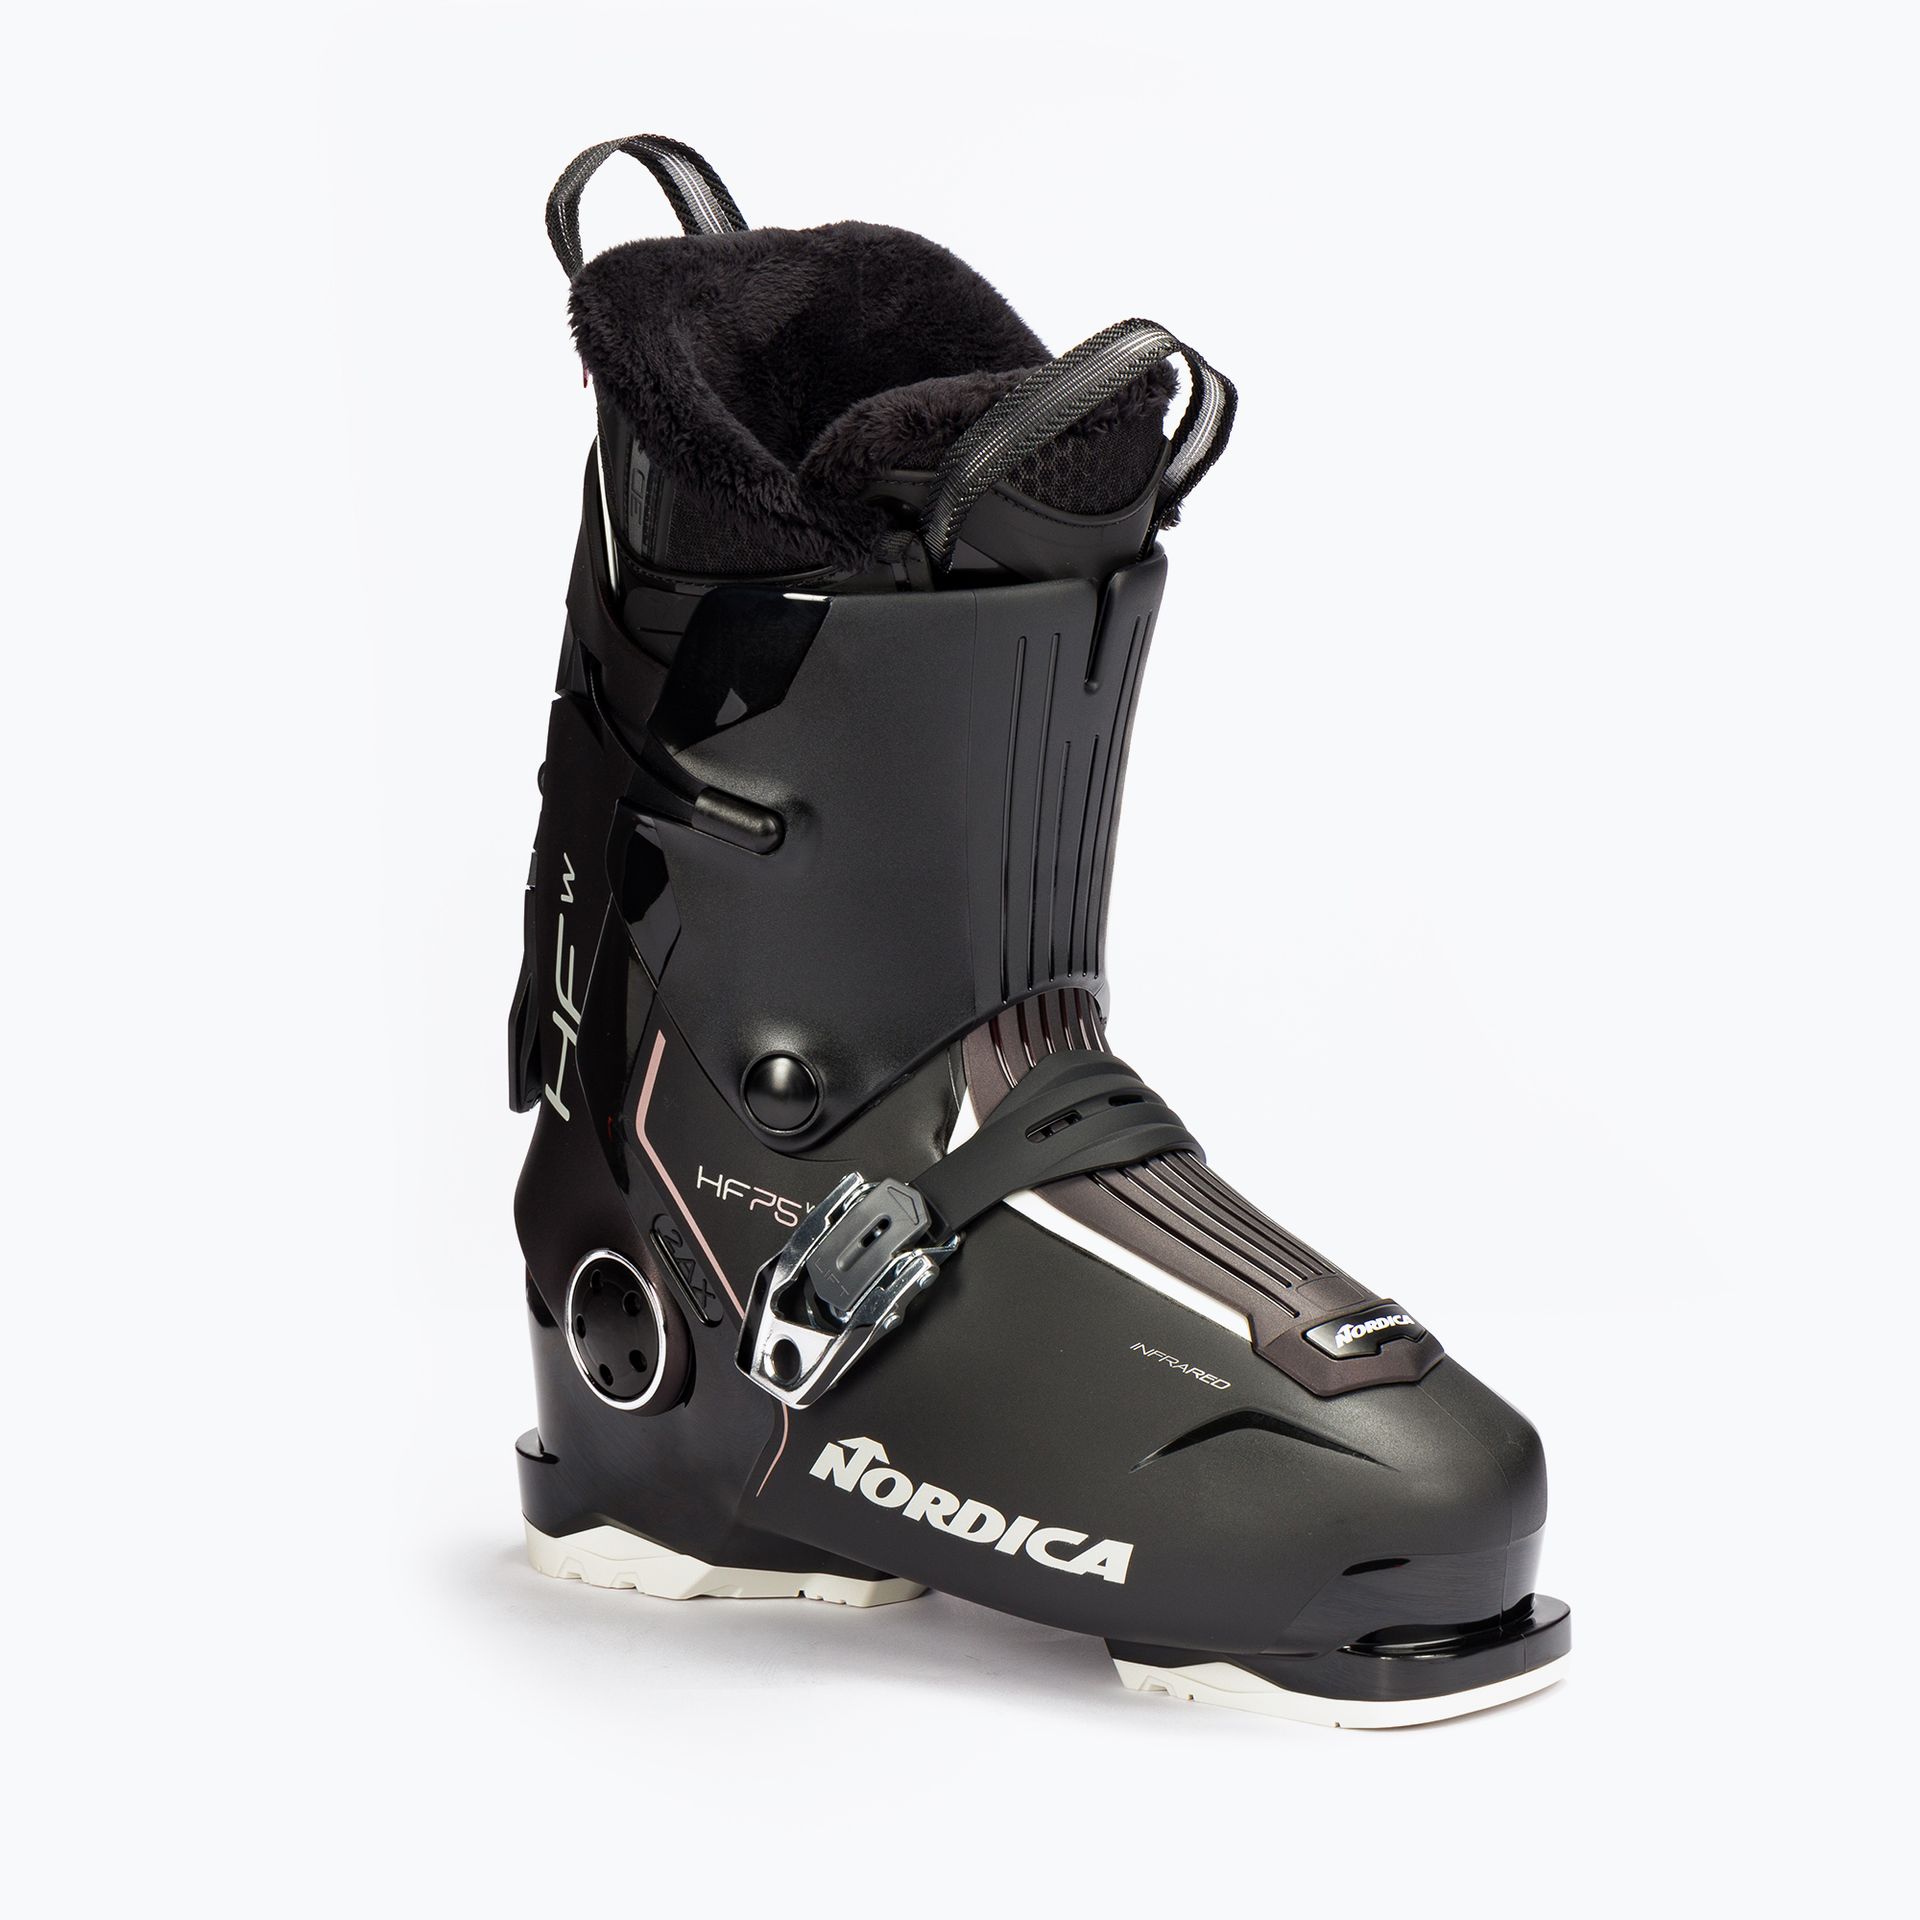 Buty narciarskie damskie Nordica HF 75 W czarne 050K1900 3C2